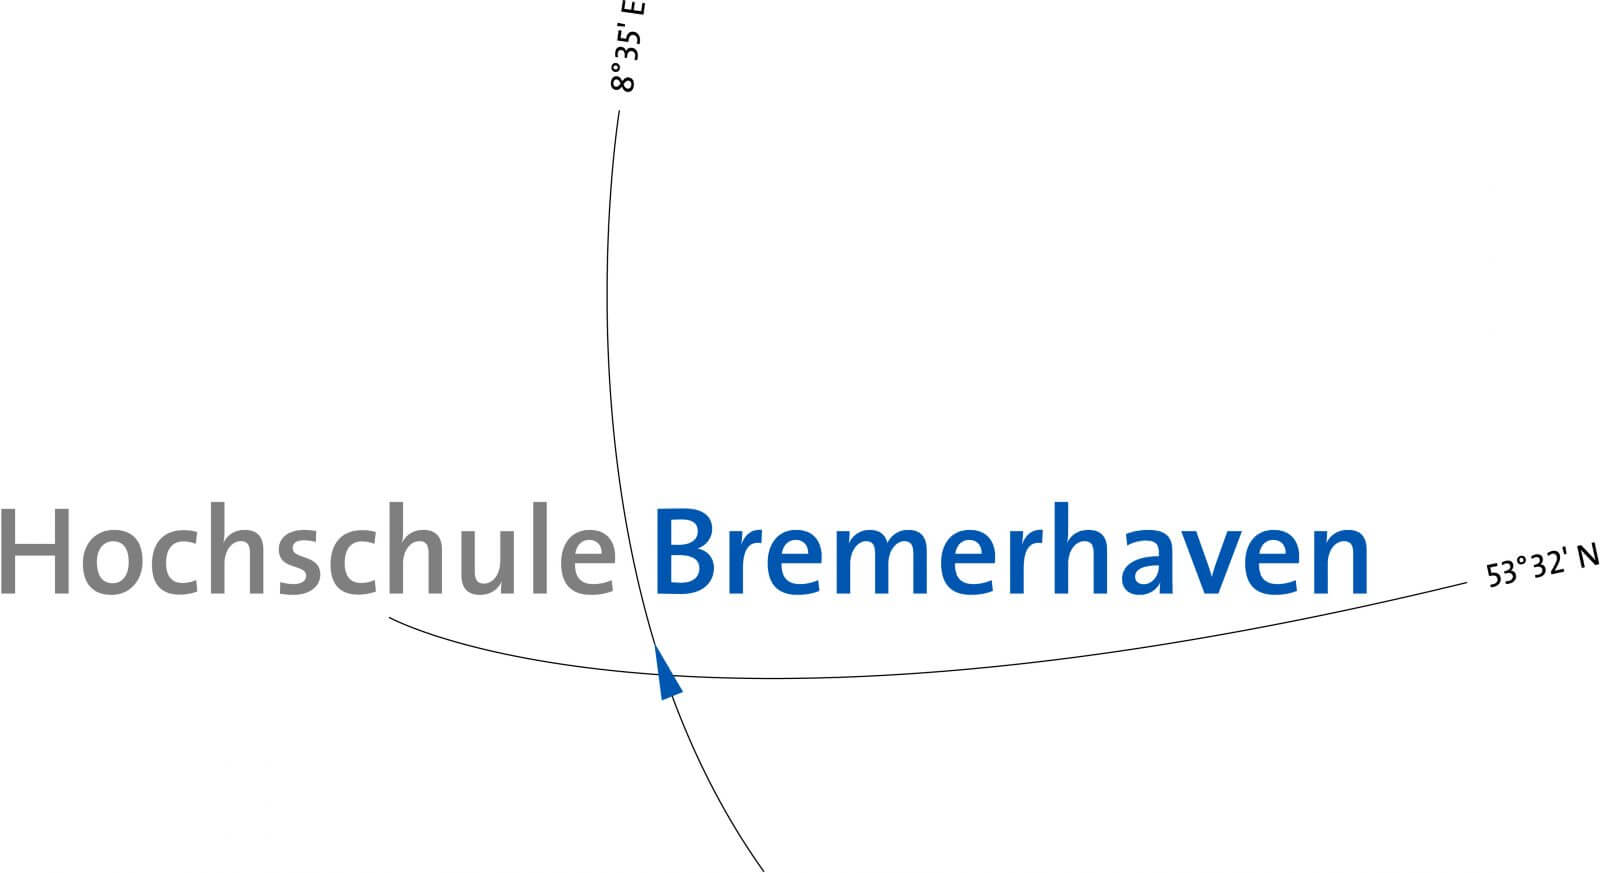 Univ. Bremerhaven